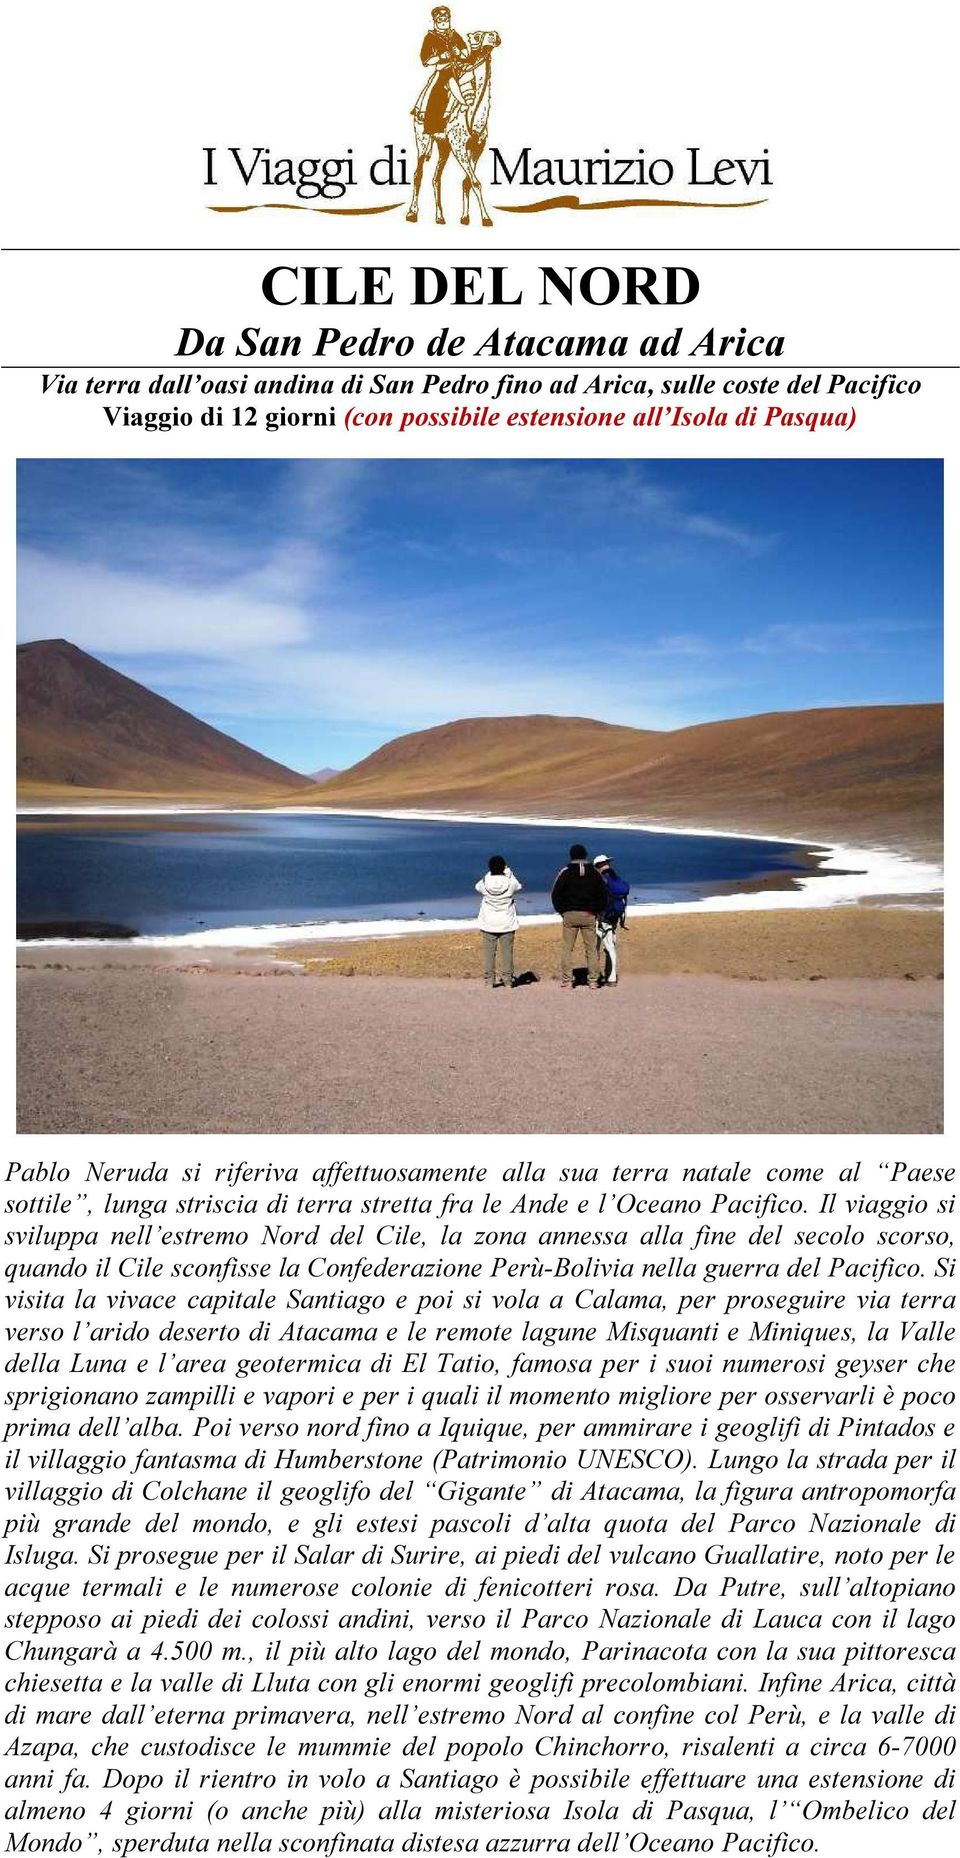 Il viaggio si sviluppa nell estremo Nord del Cile, la zona annessa alla fine del secolo scorso, quando il Cile sconfisse la Confederazione Perù-Bolivia nella guerra del Pacifico.